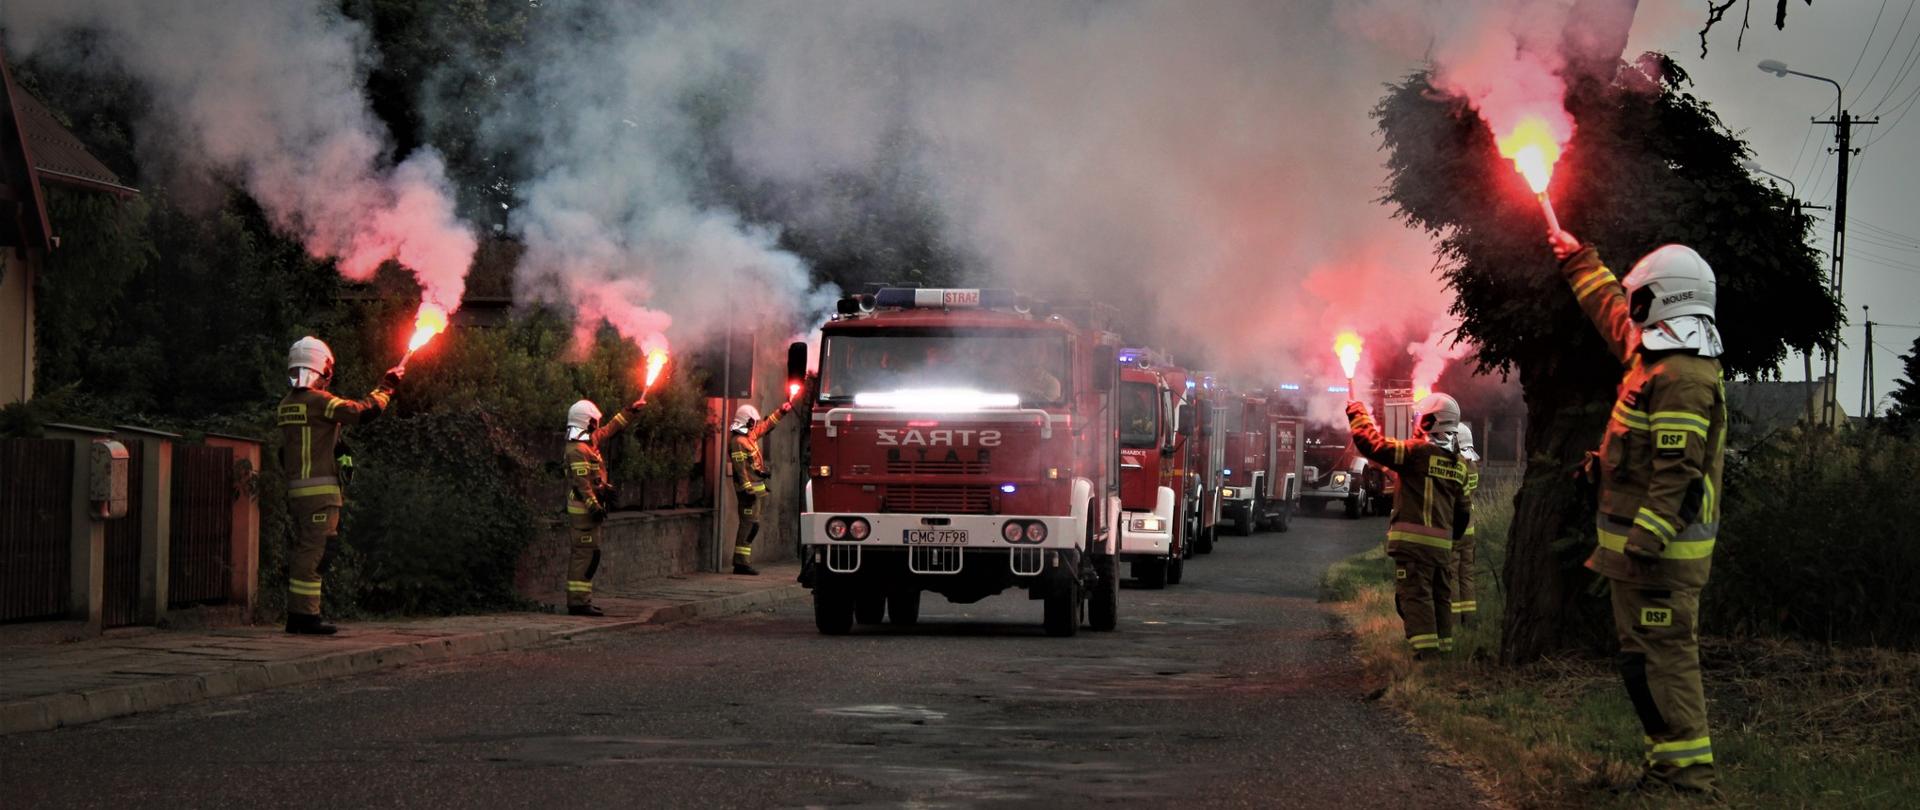 Pojazdy pożarnicze jadą jeden z drugim. Po bokach drogi stoją strażacy z odpalonymi racami